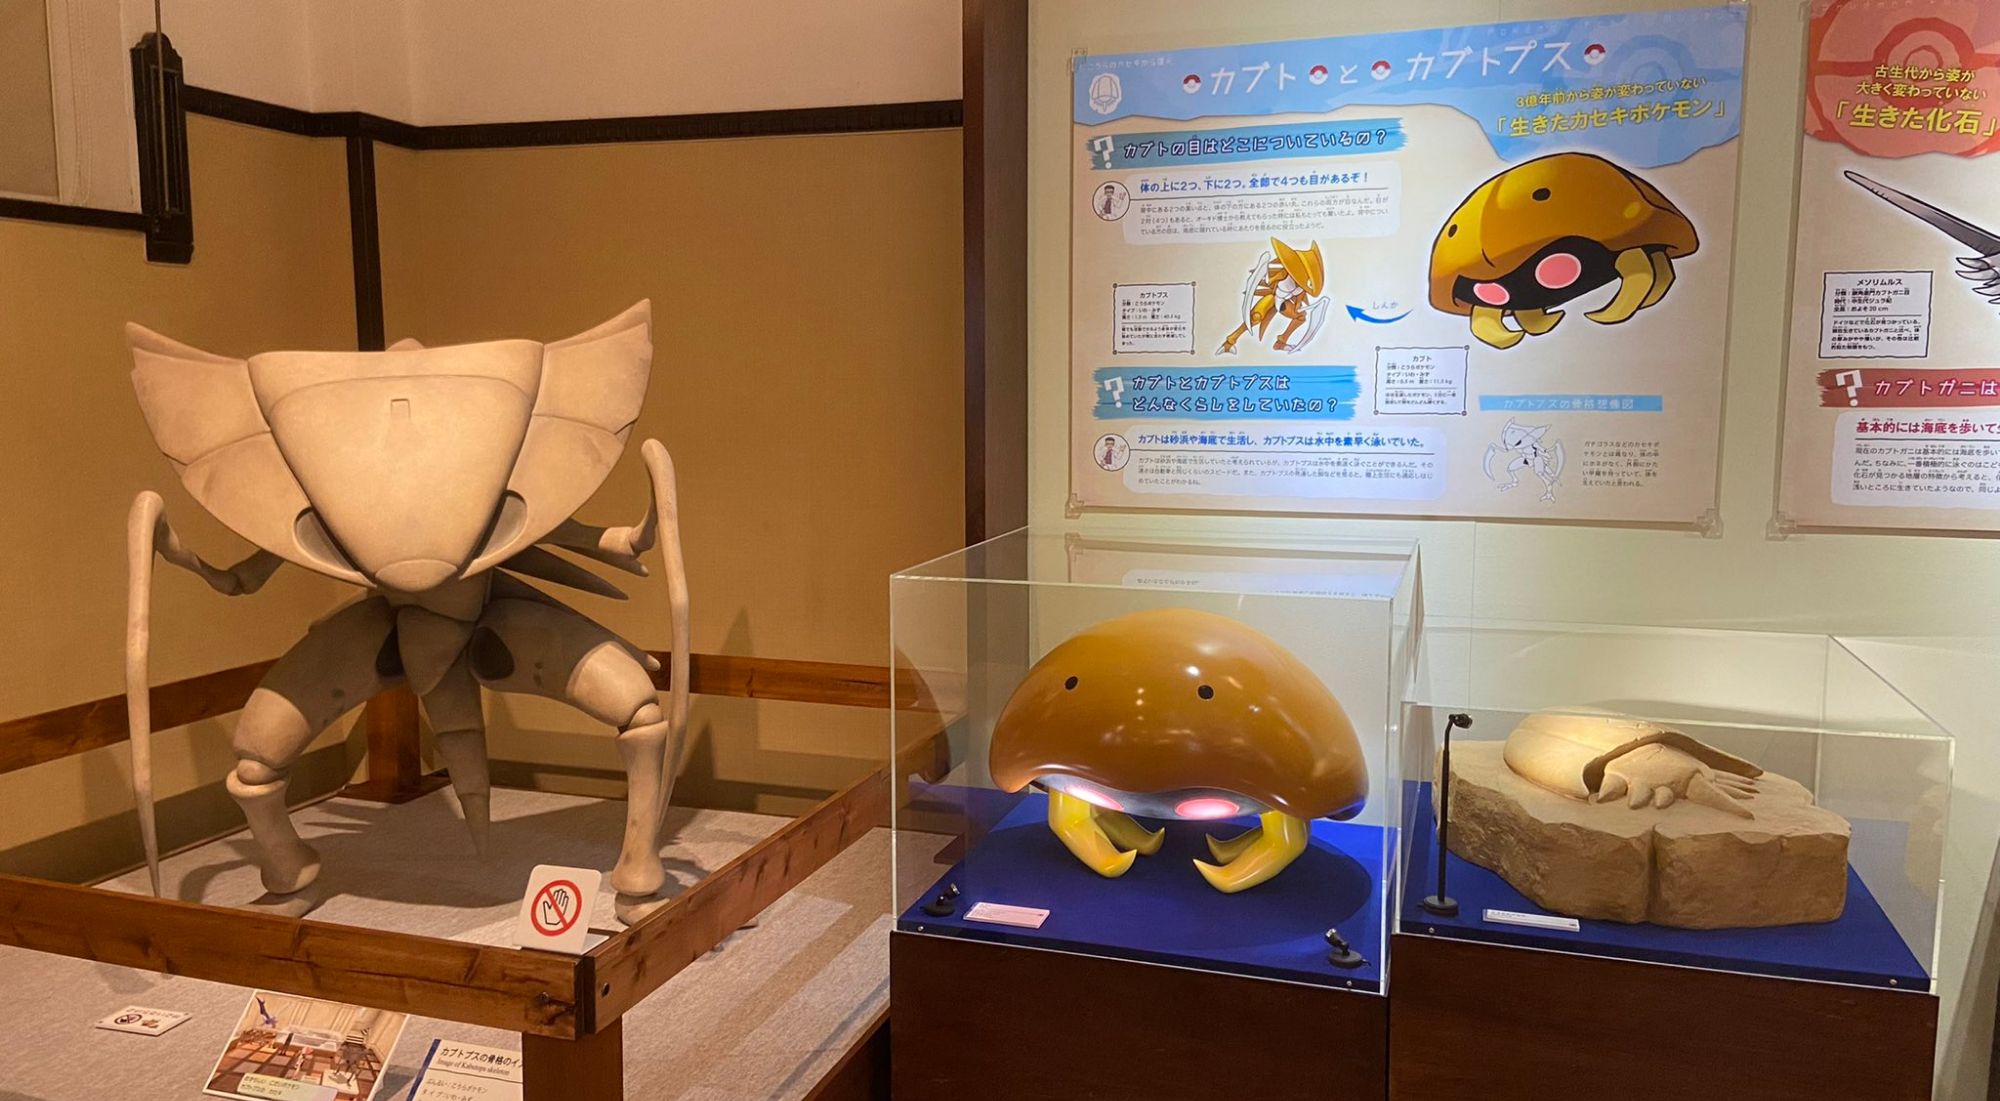 日本博物馆联合宝可梦举办化石巡回展 镰刀盔与菊石兽等宝可梦亮相